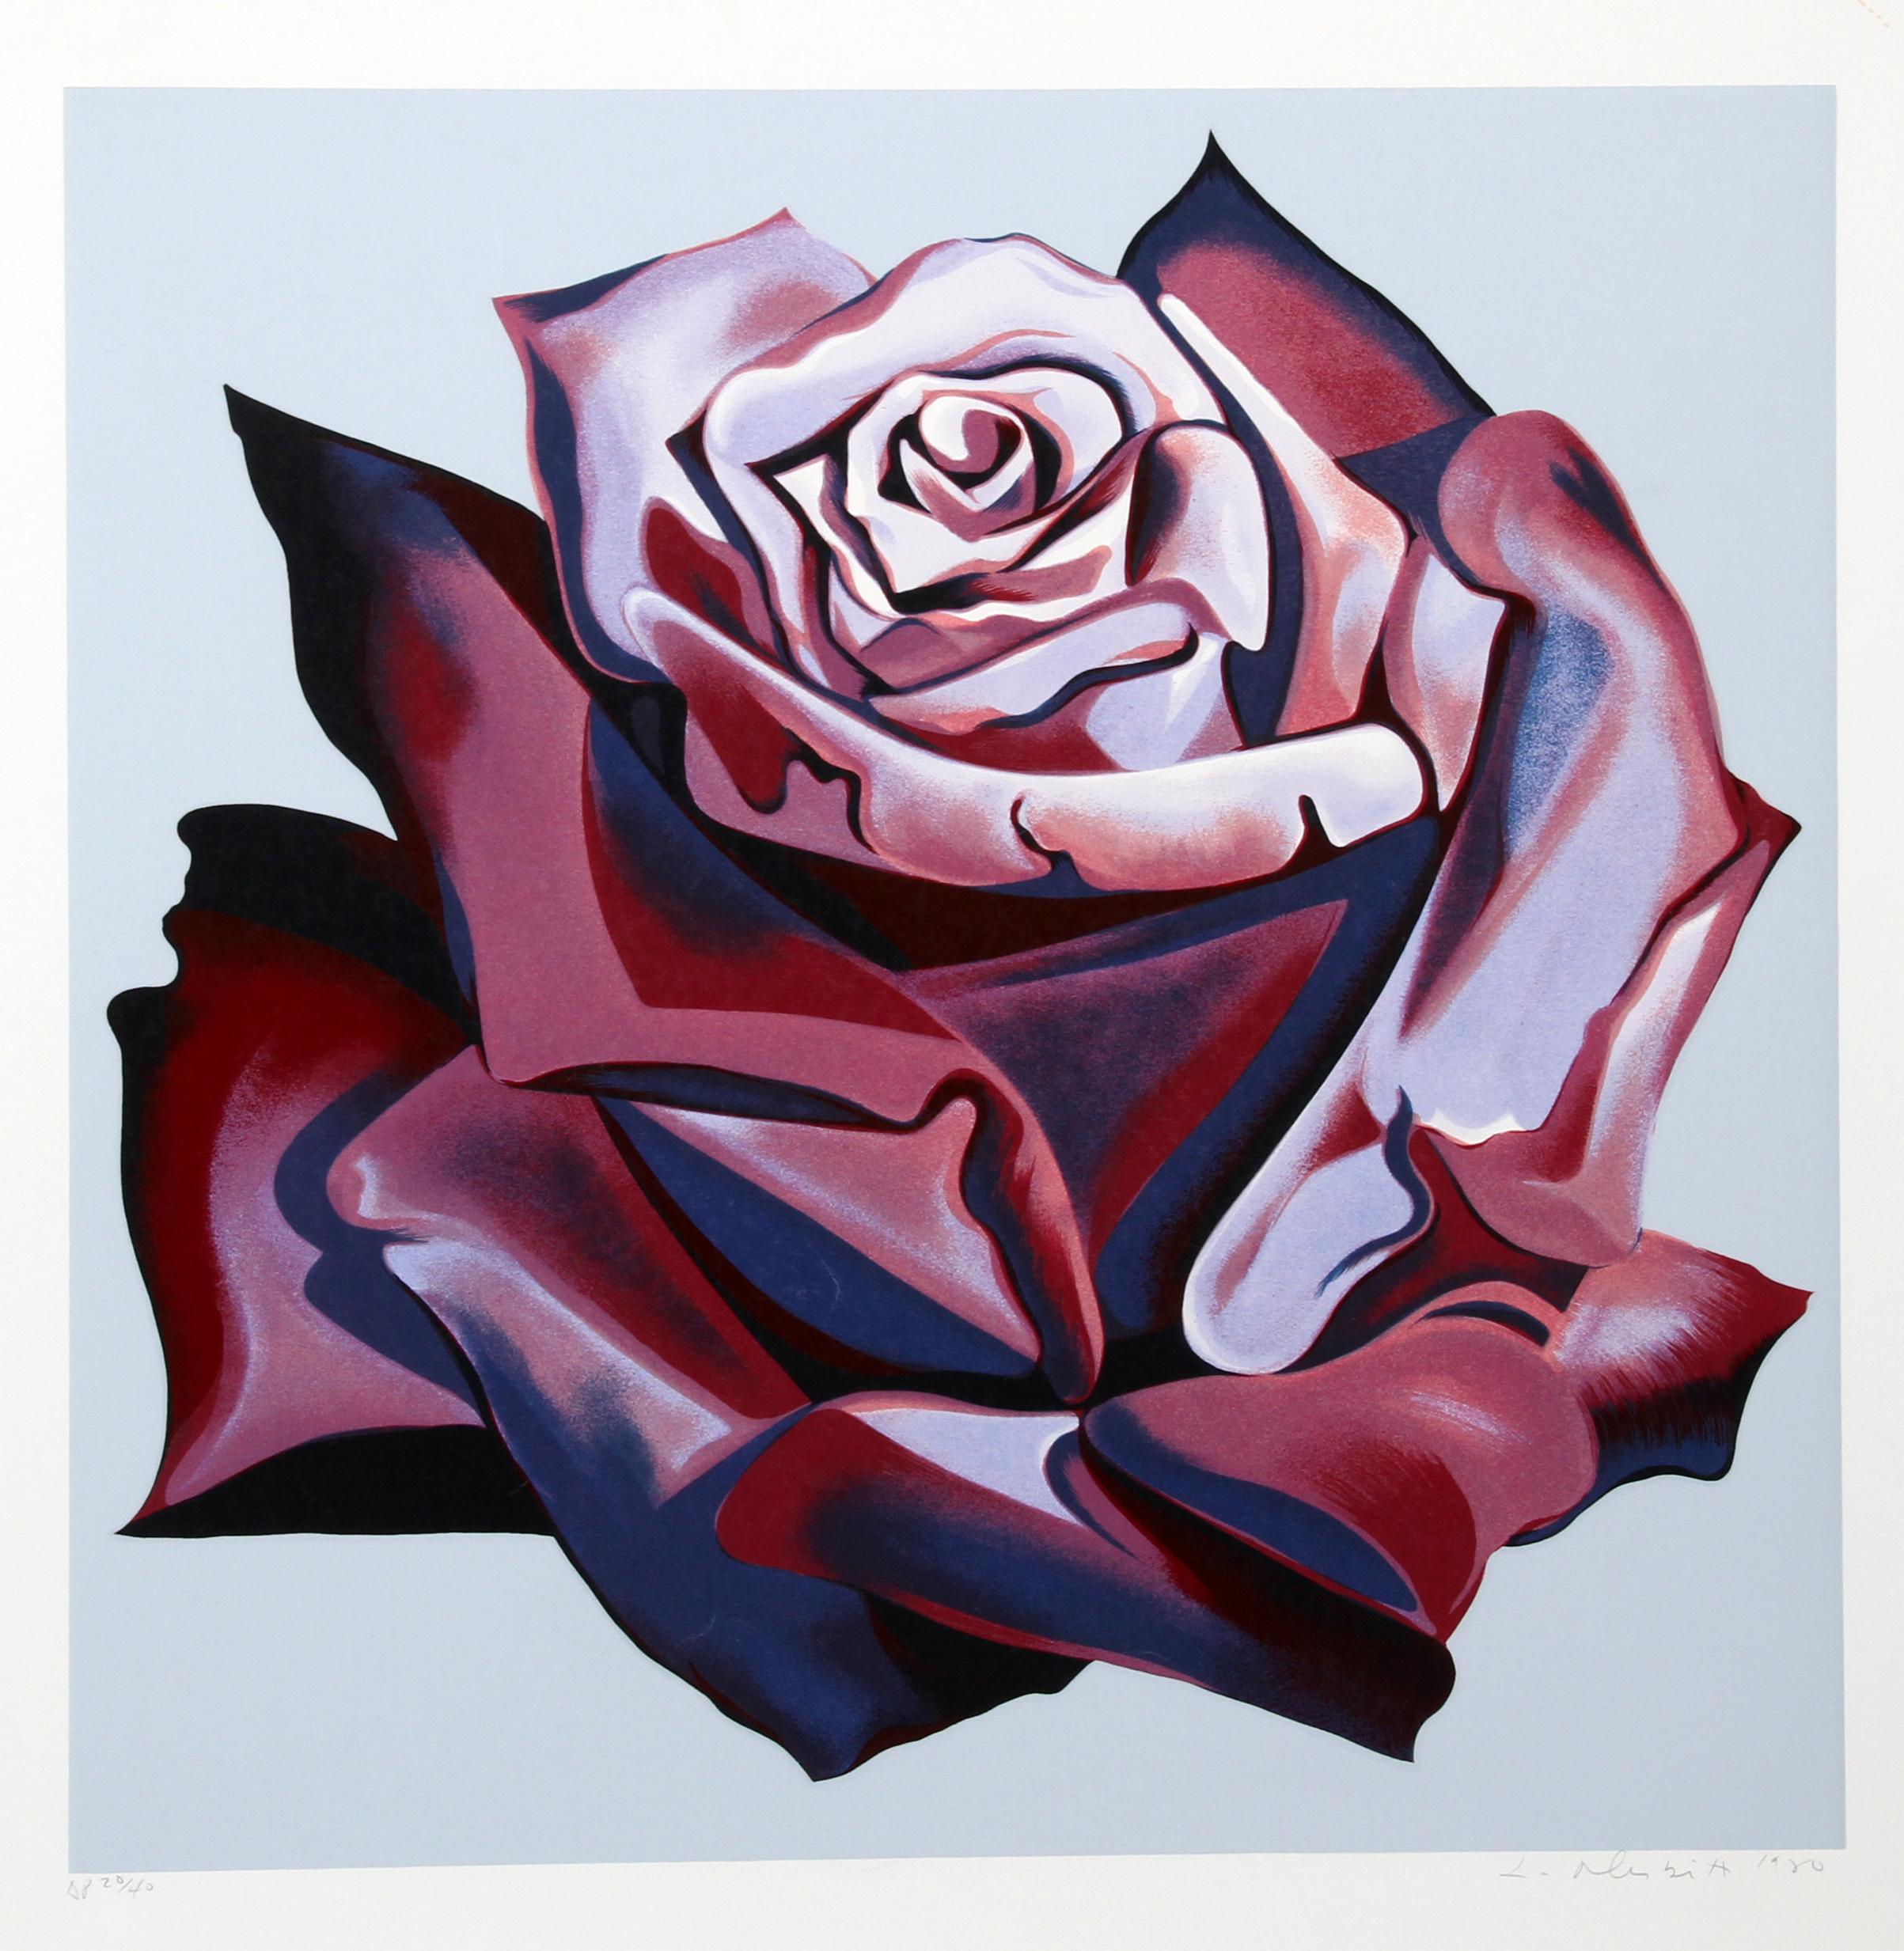 Künstler: Lowell Blair Nesbitt, Amerikaner (1933 - 1993)
Titel: Rote Rose
Jahr: 1980
Medium: Serigraphie, signiert und nummeriert mit Bleistift
Auflage: 200
Bildgröße: 30 x 30 Zoll
Größe: 38 Zoll x 37 Zoll (96,52 cm x 93,98 cm)